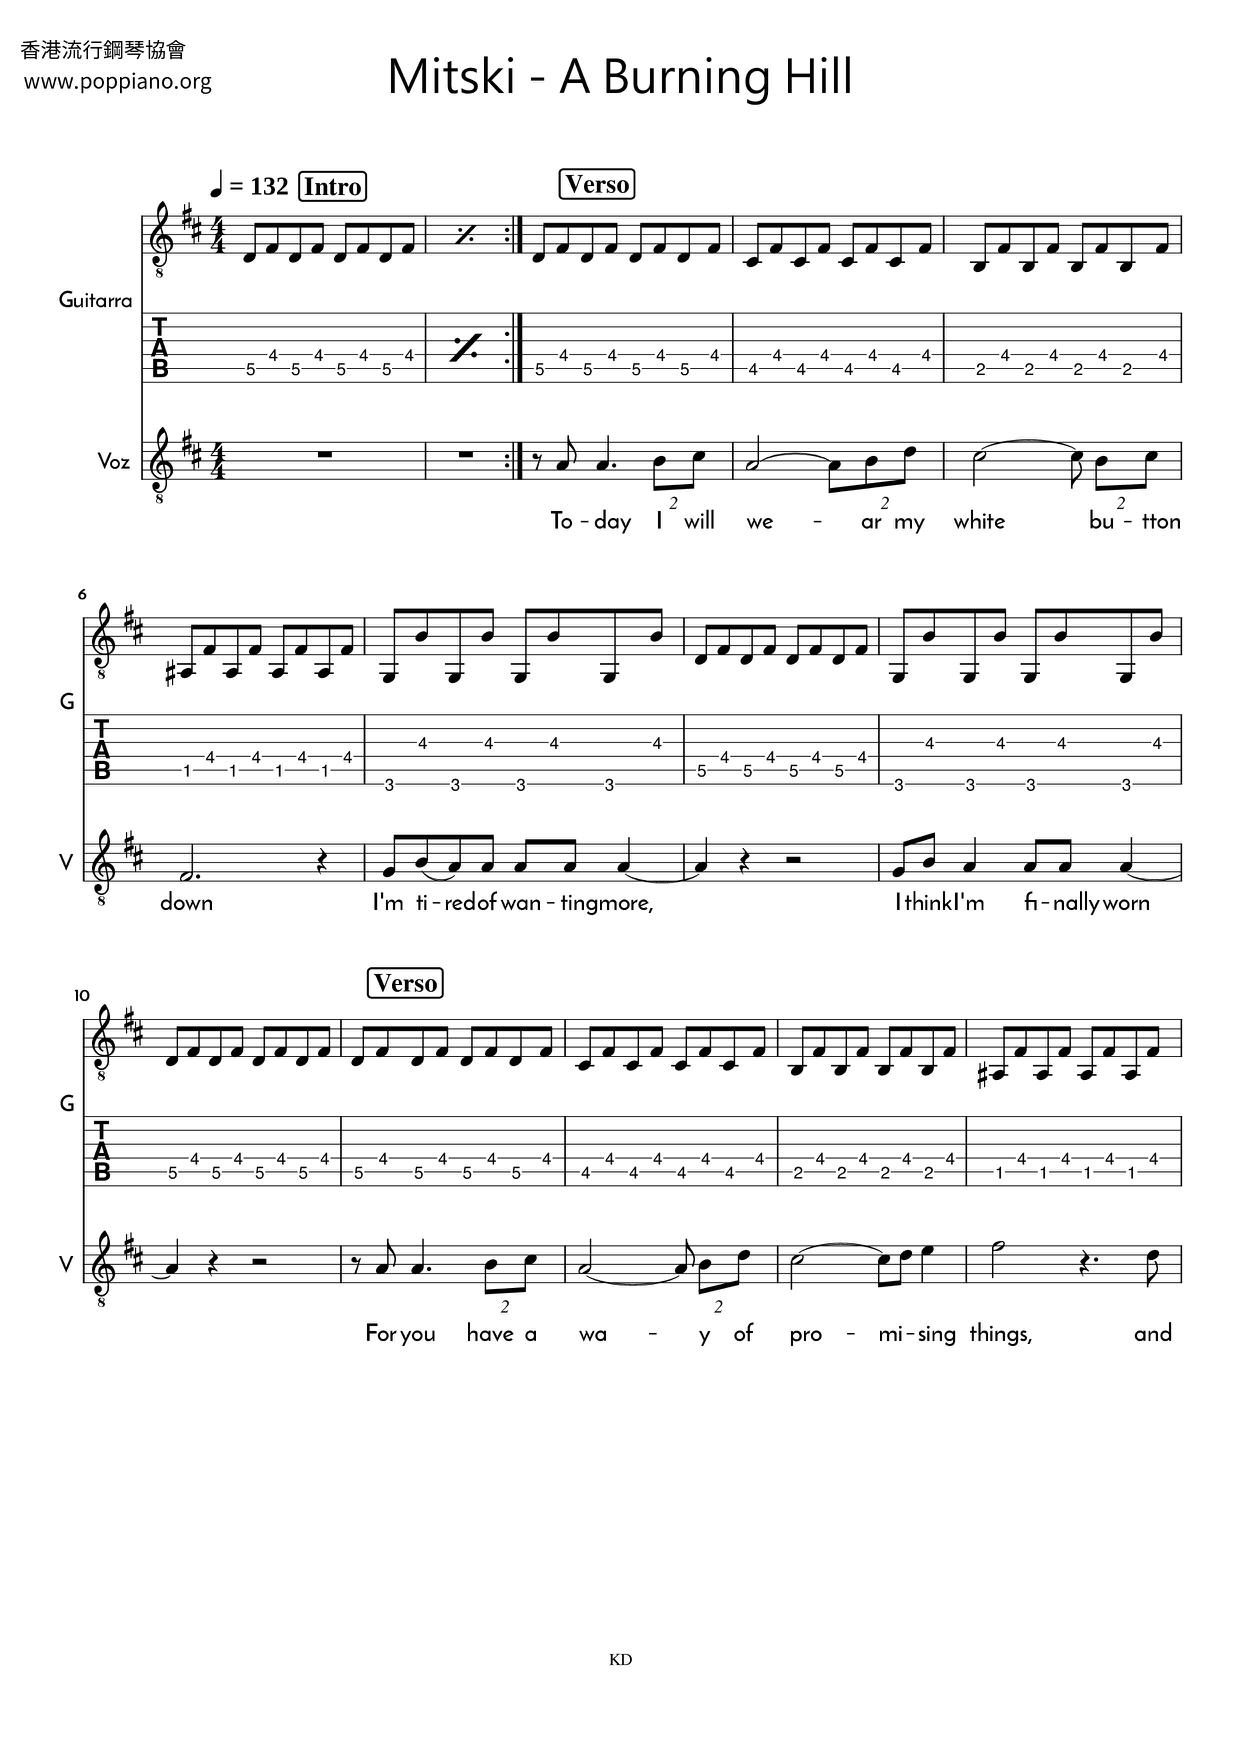 sobrina multa invención ☆ Mitski-A Burning Hill Sheet Music pdf, - Free Score Download ☆